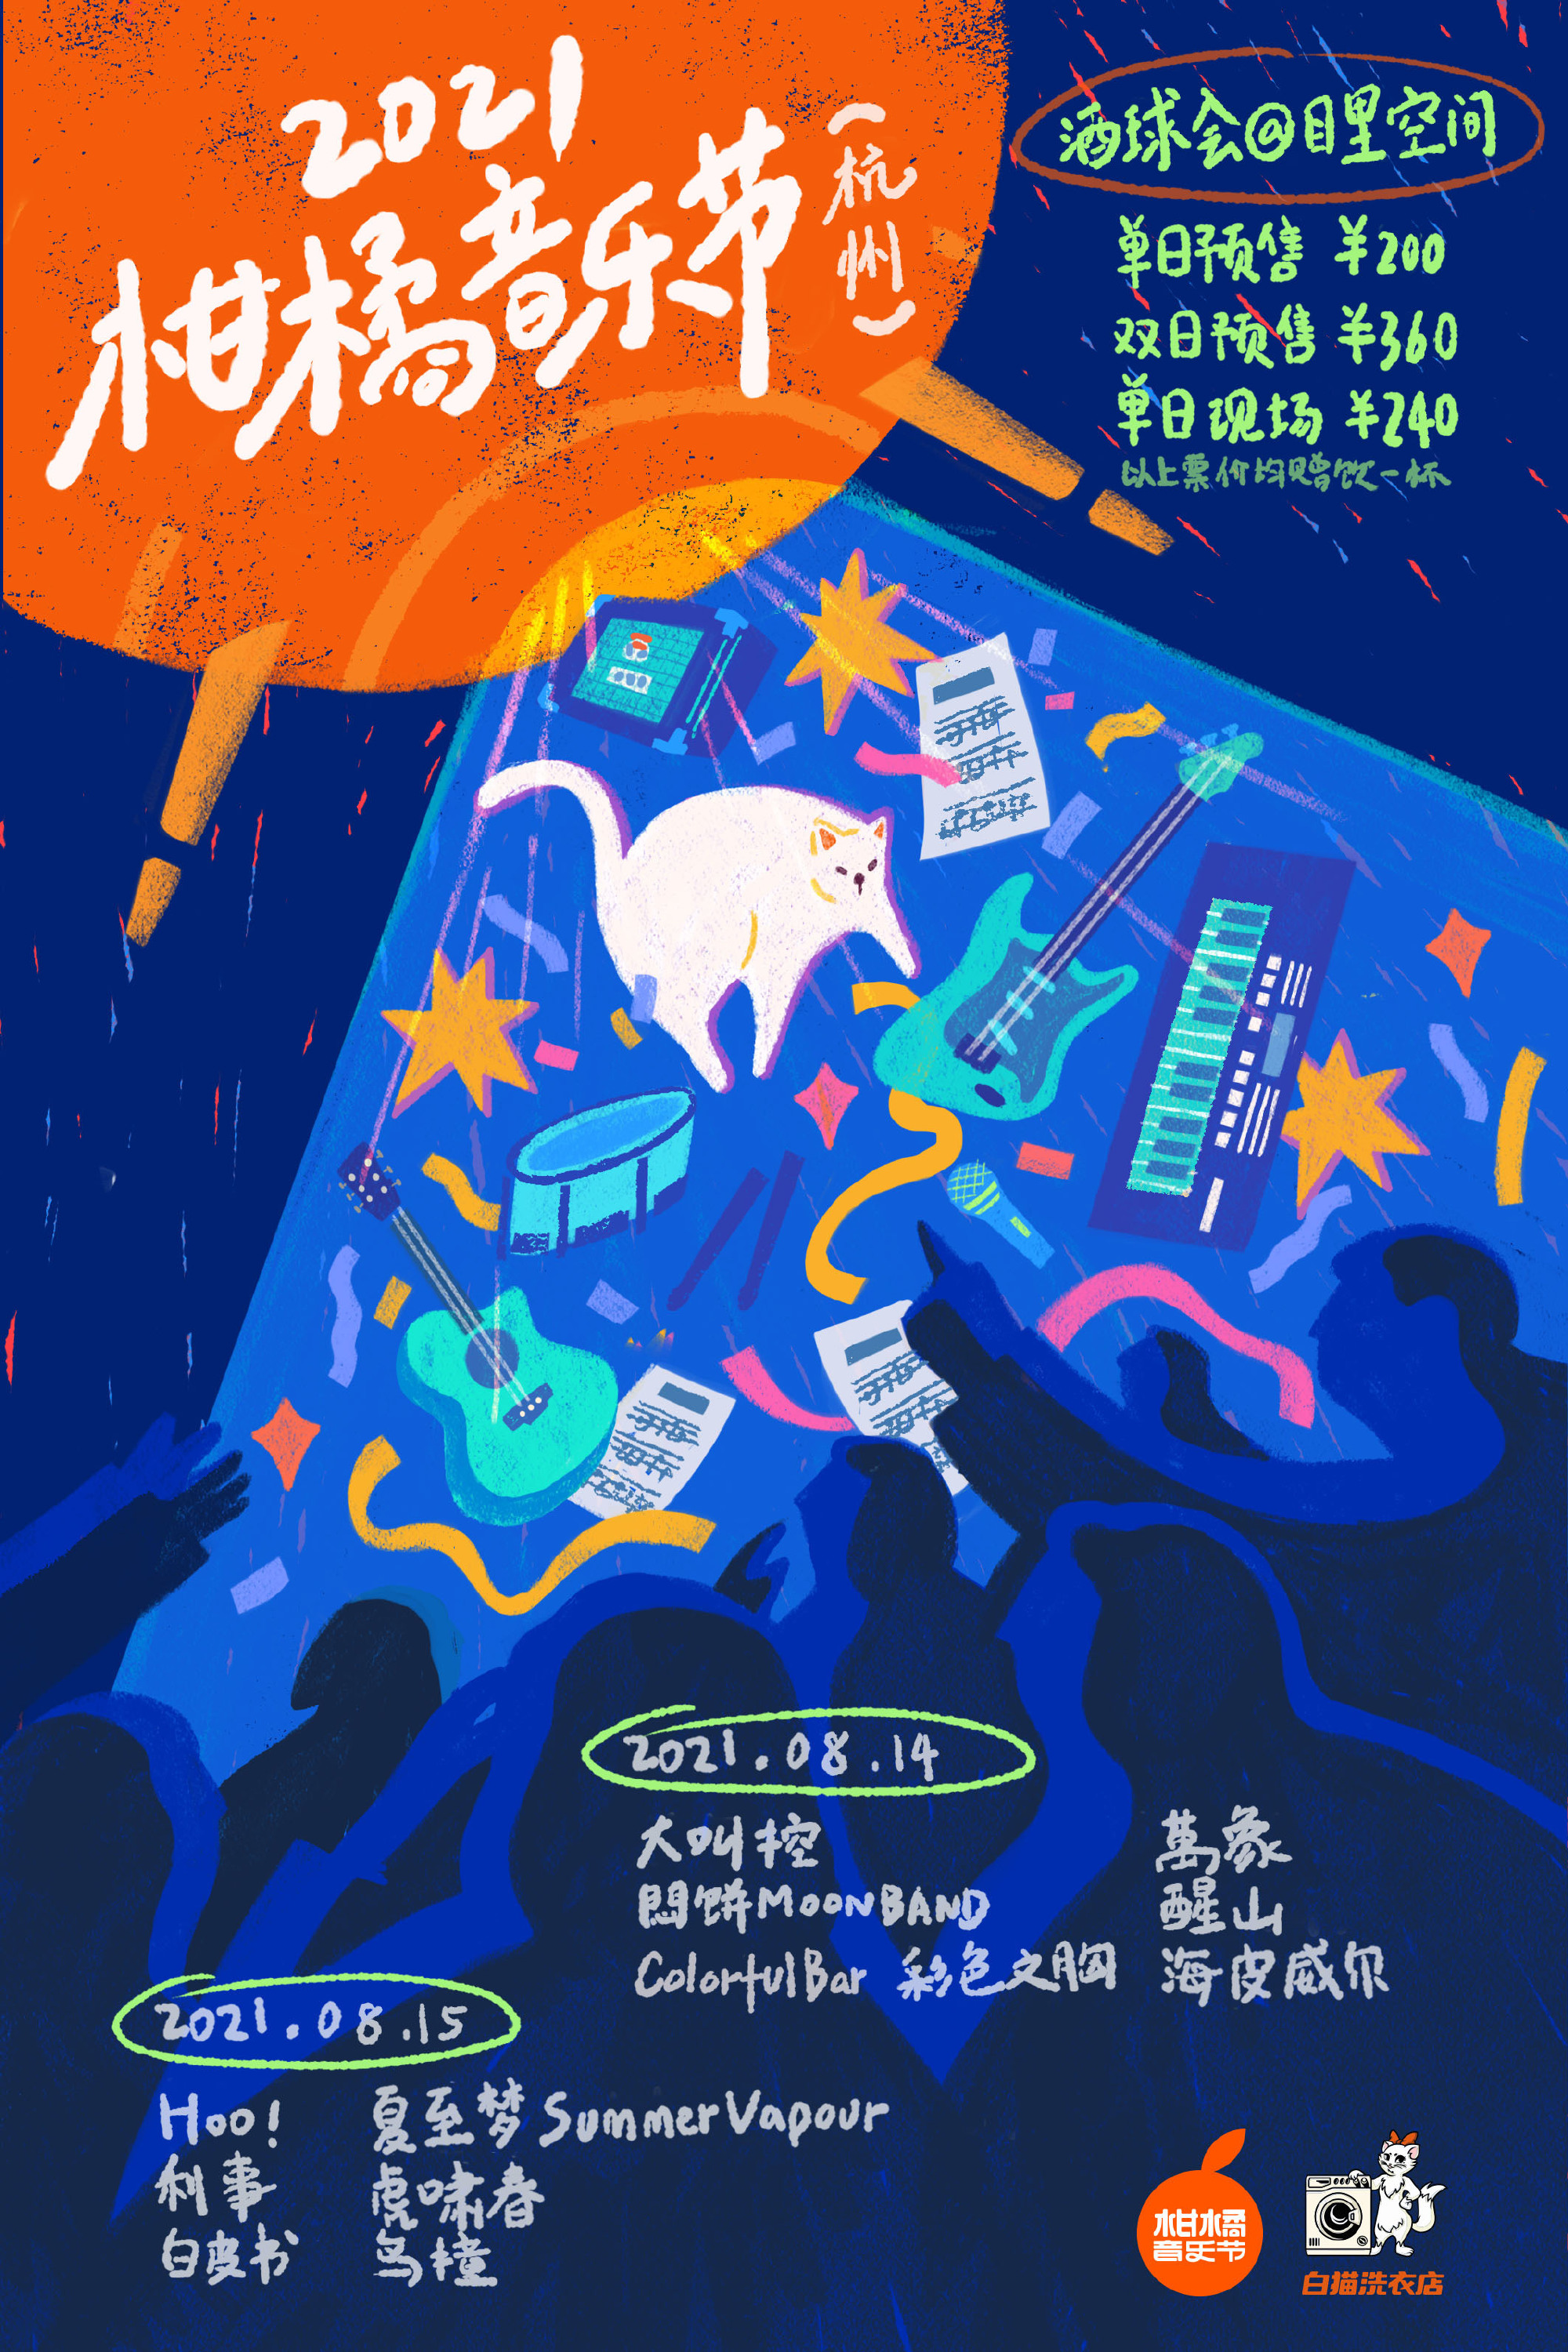 2021杭州柑橘音乐节时间地点、嘉宾阵容、门票详情